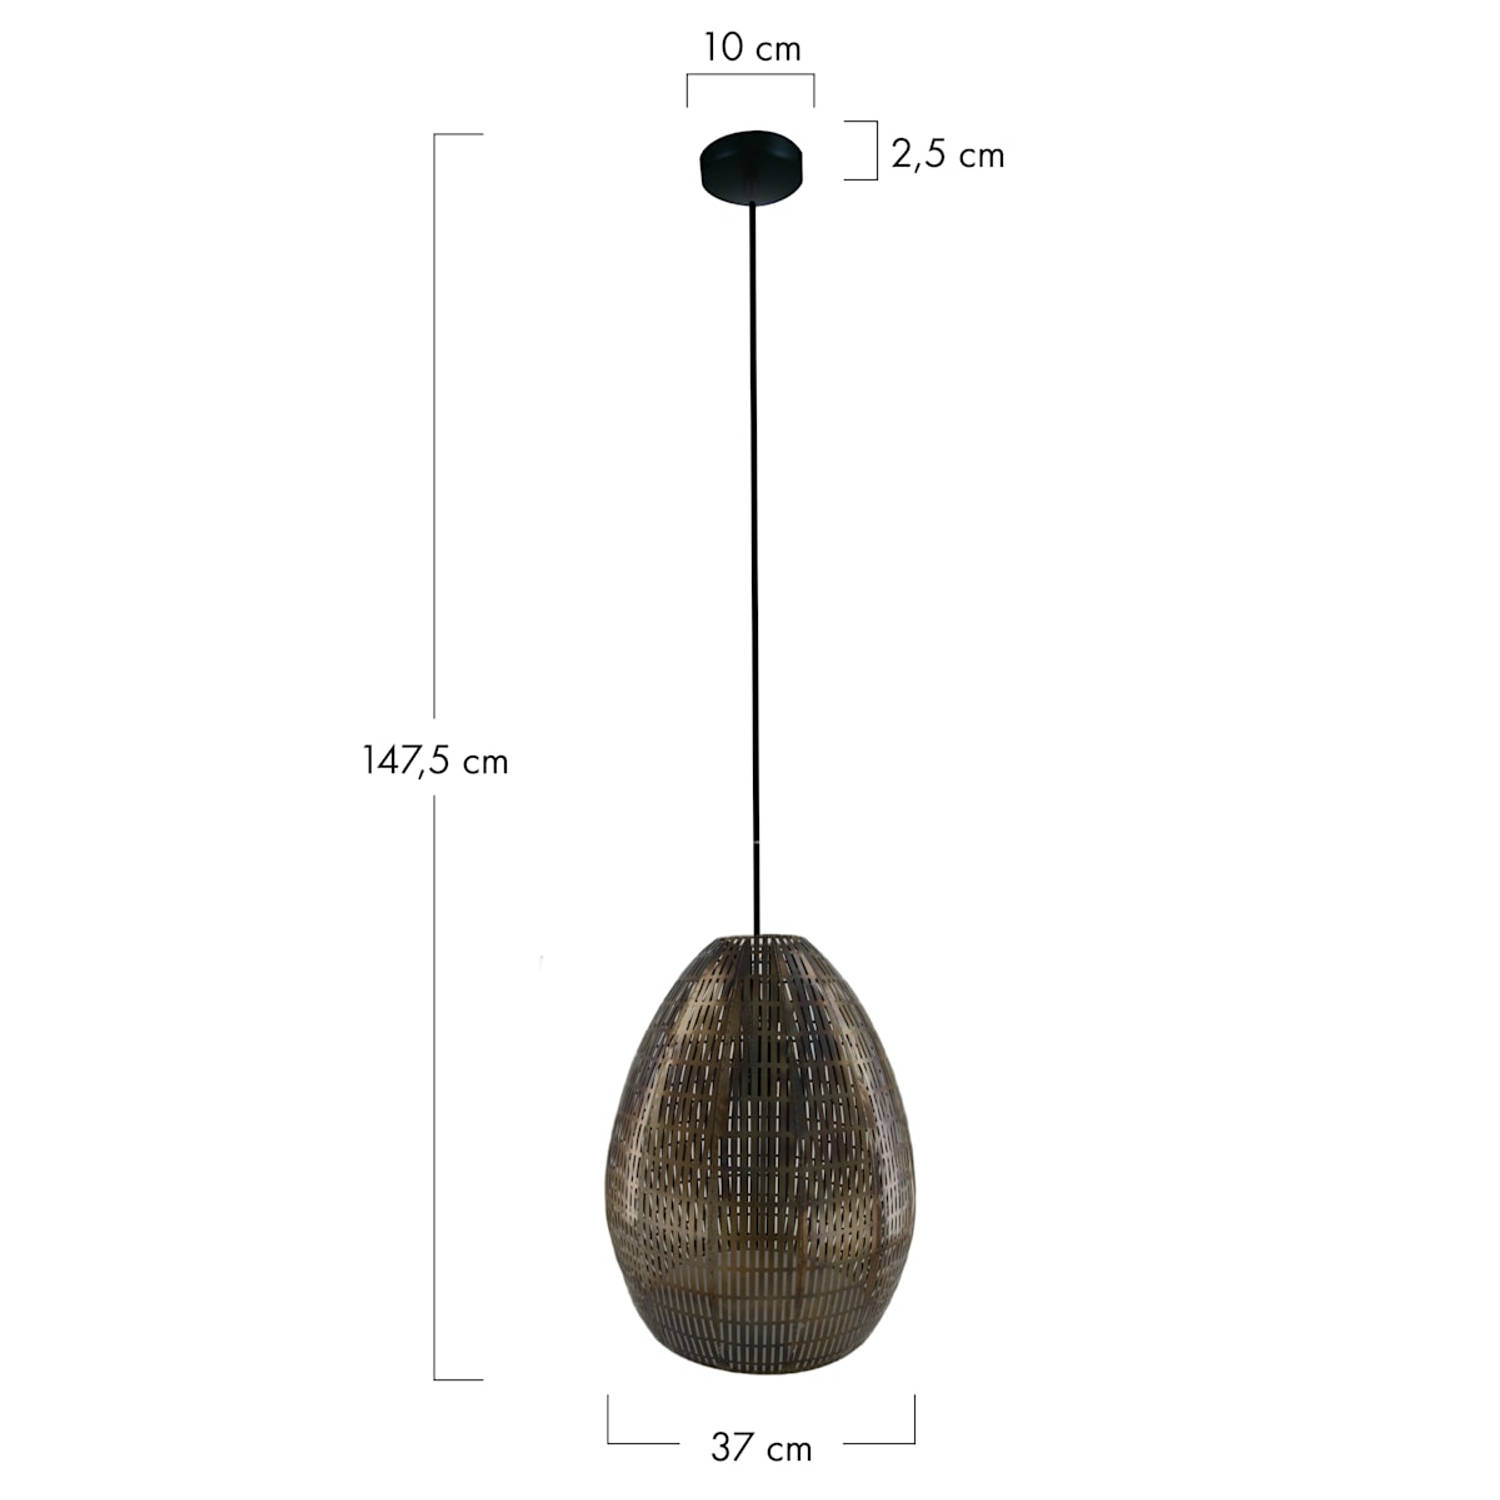 DKNC - Hanglamp Pretoria - Metaal - 37x37x47.5cm - Zwart